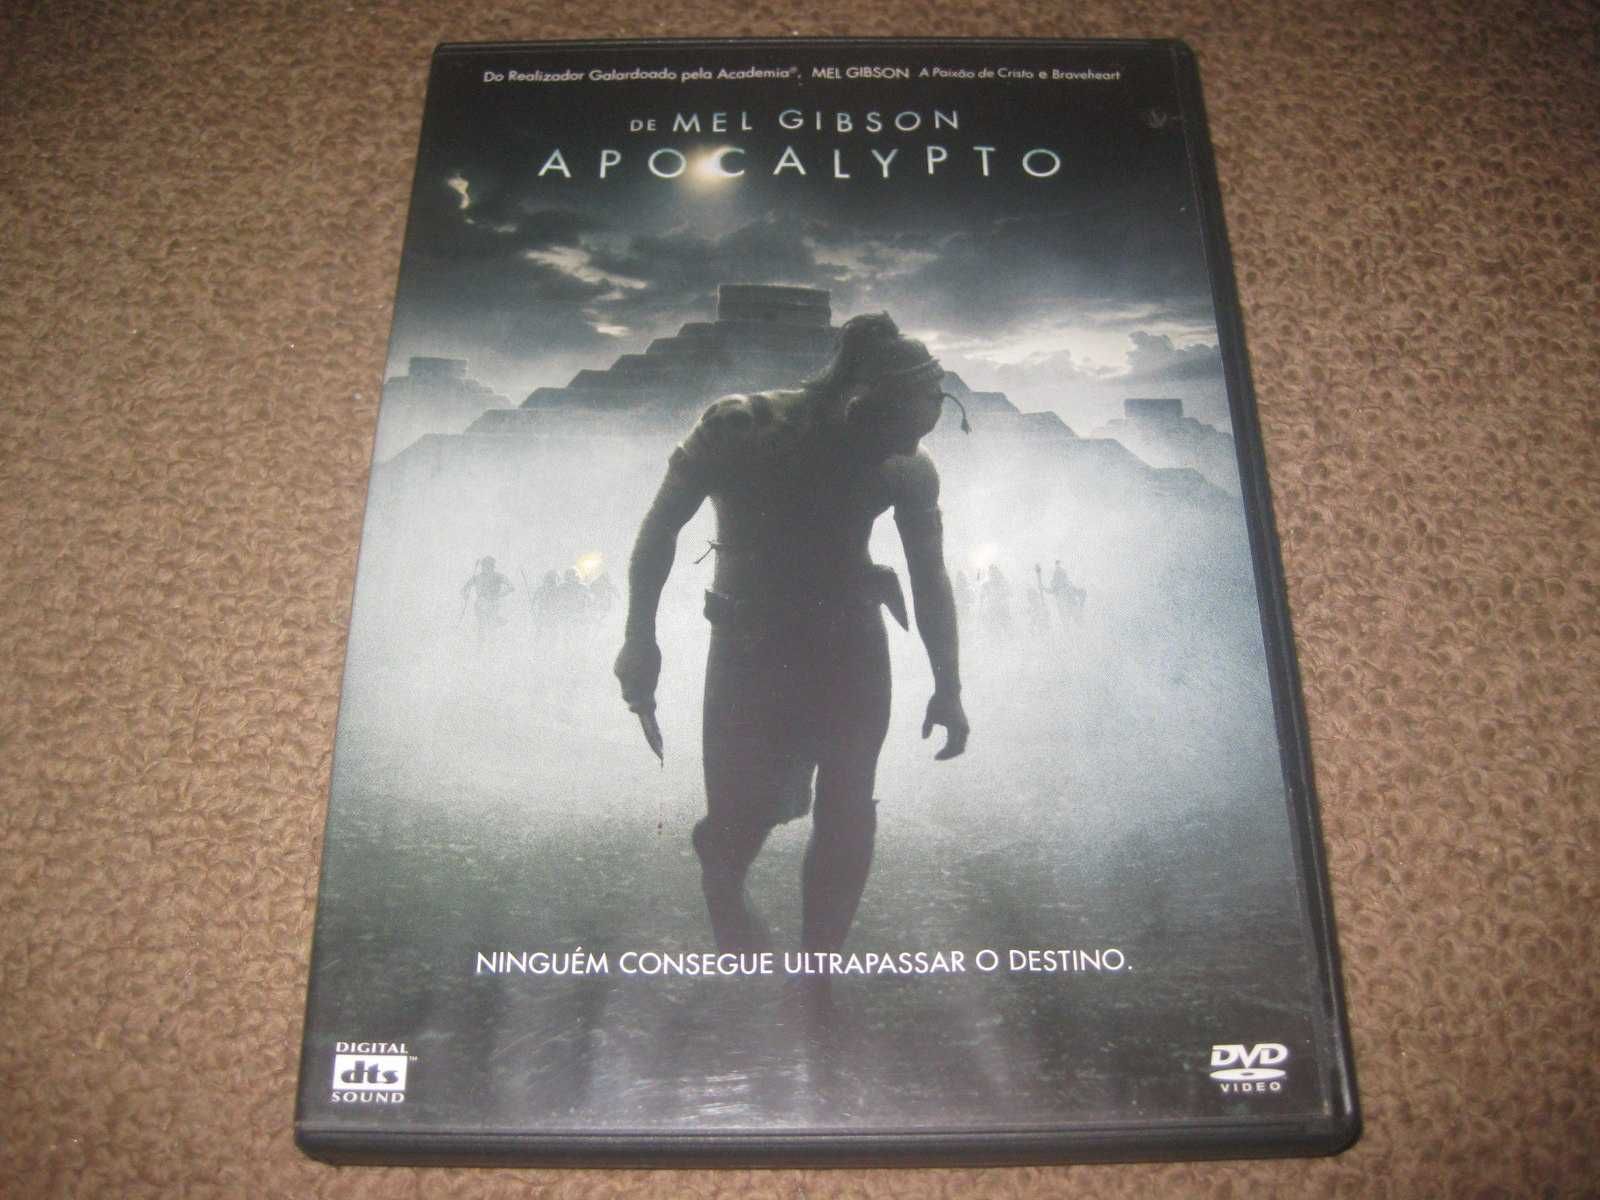 DVD "Apocalypto" de Mel Gibson